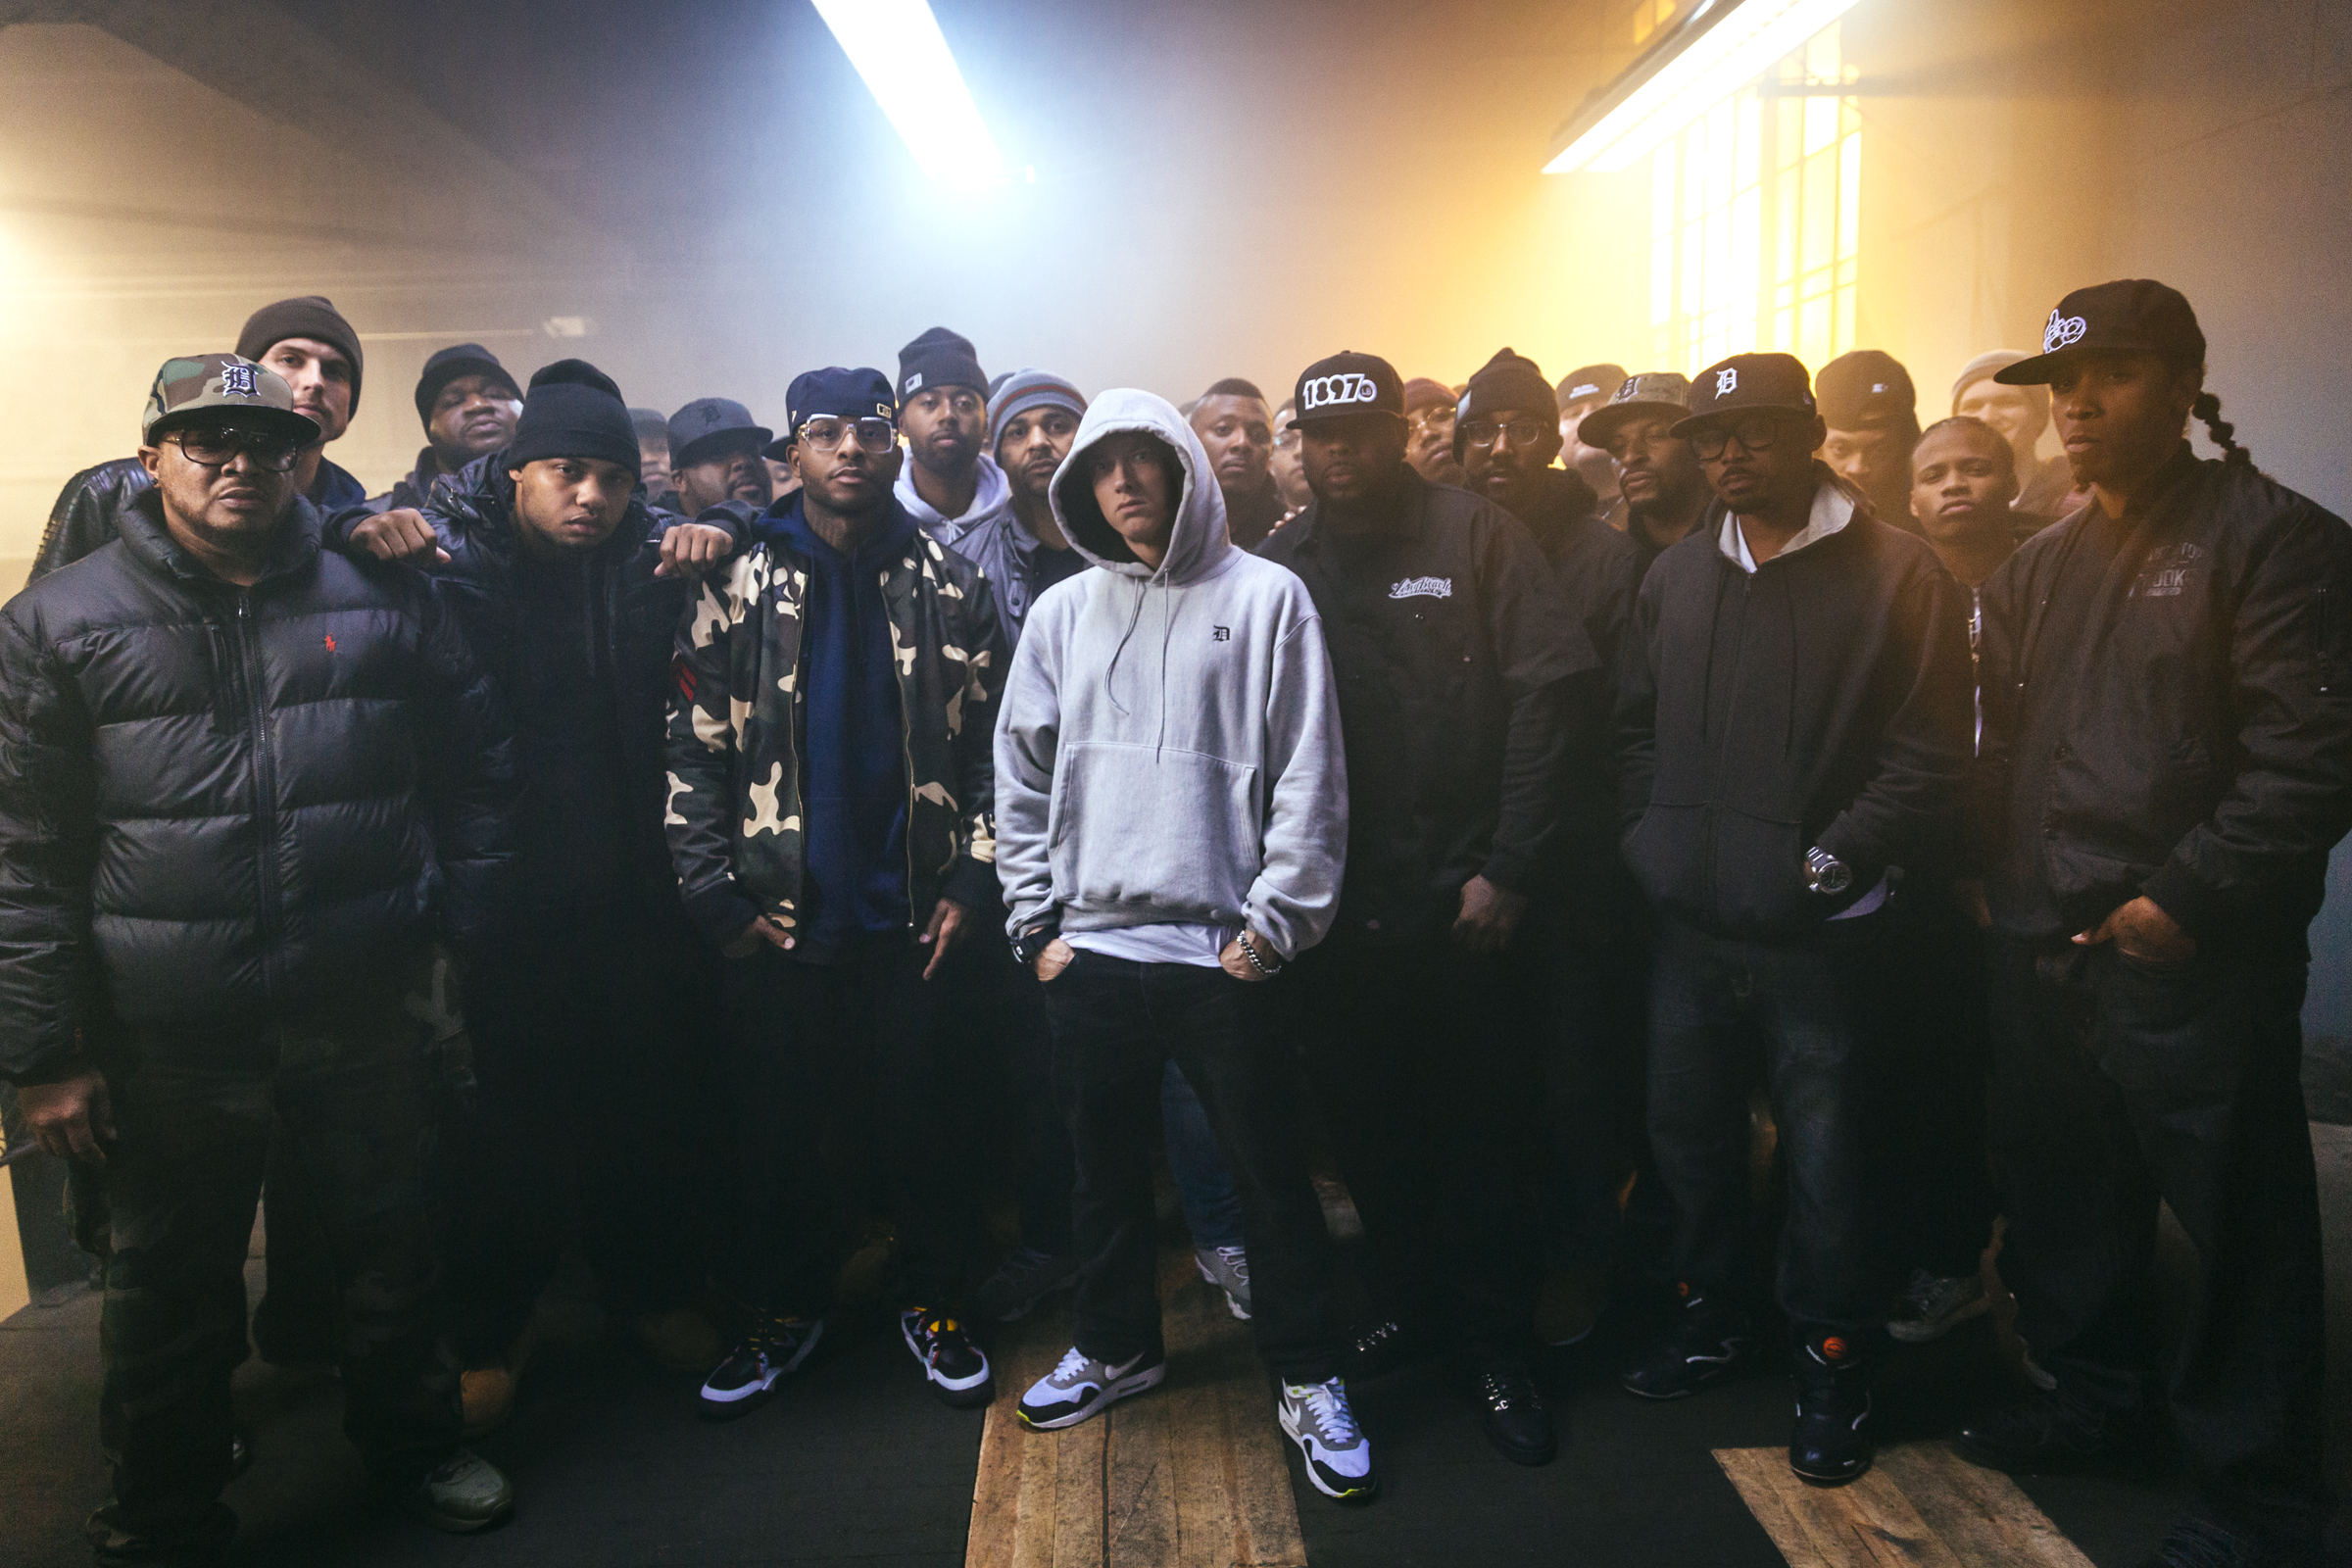 2013.11.27 - Eminem - Rap God Team